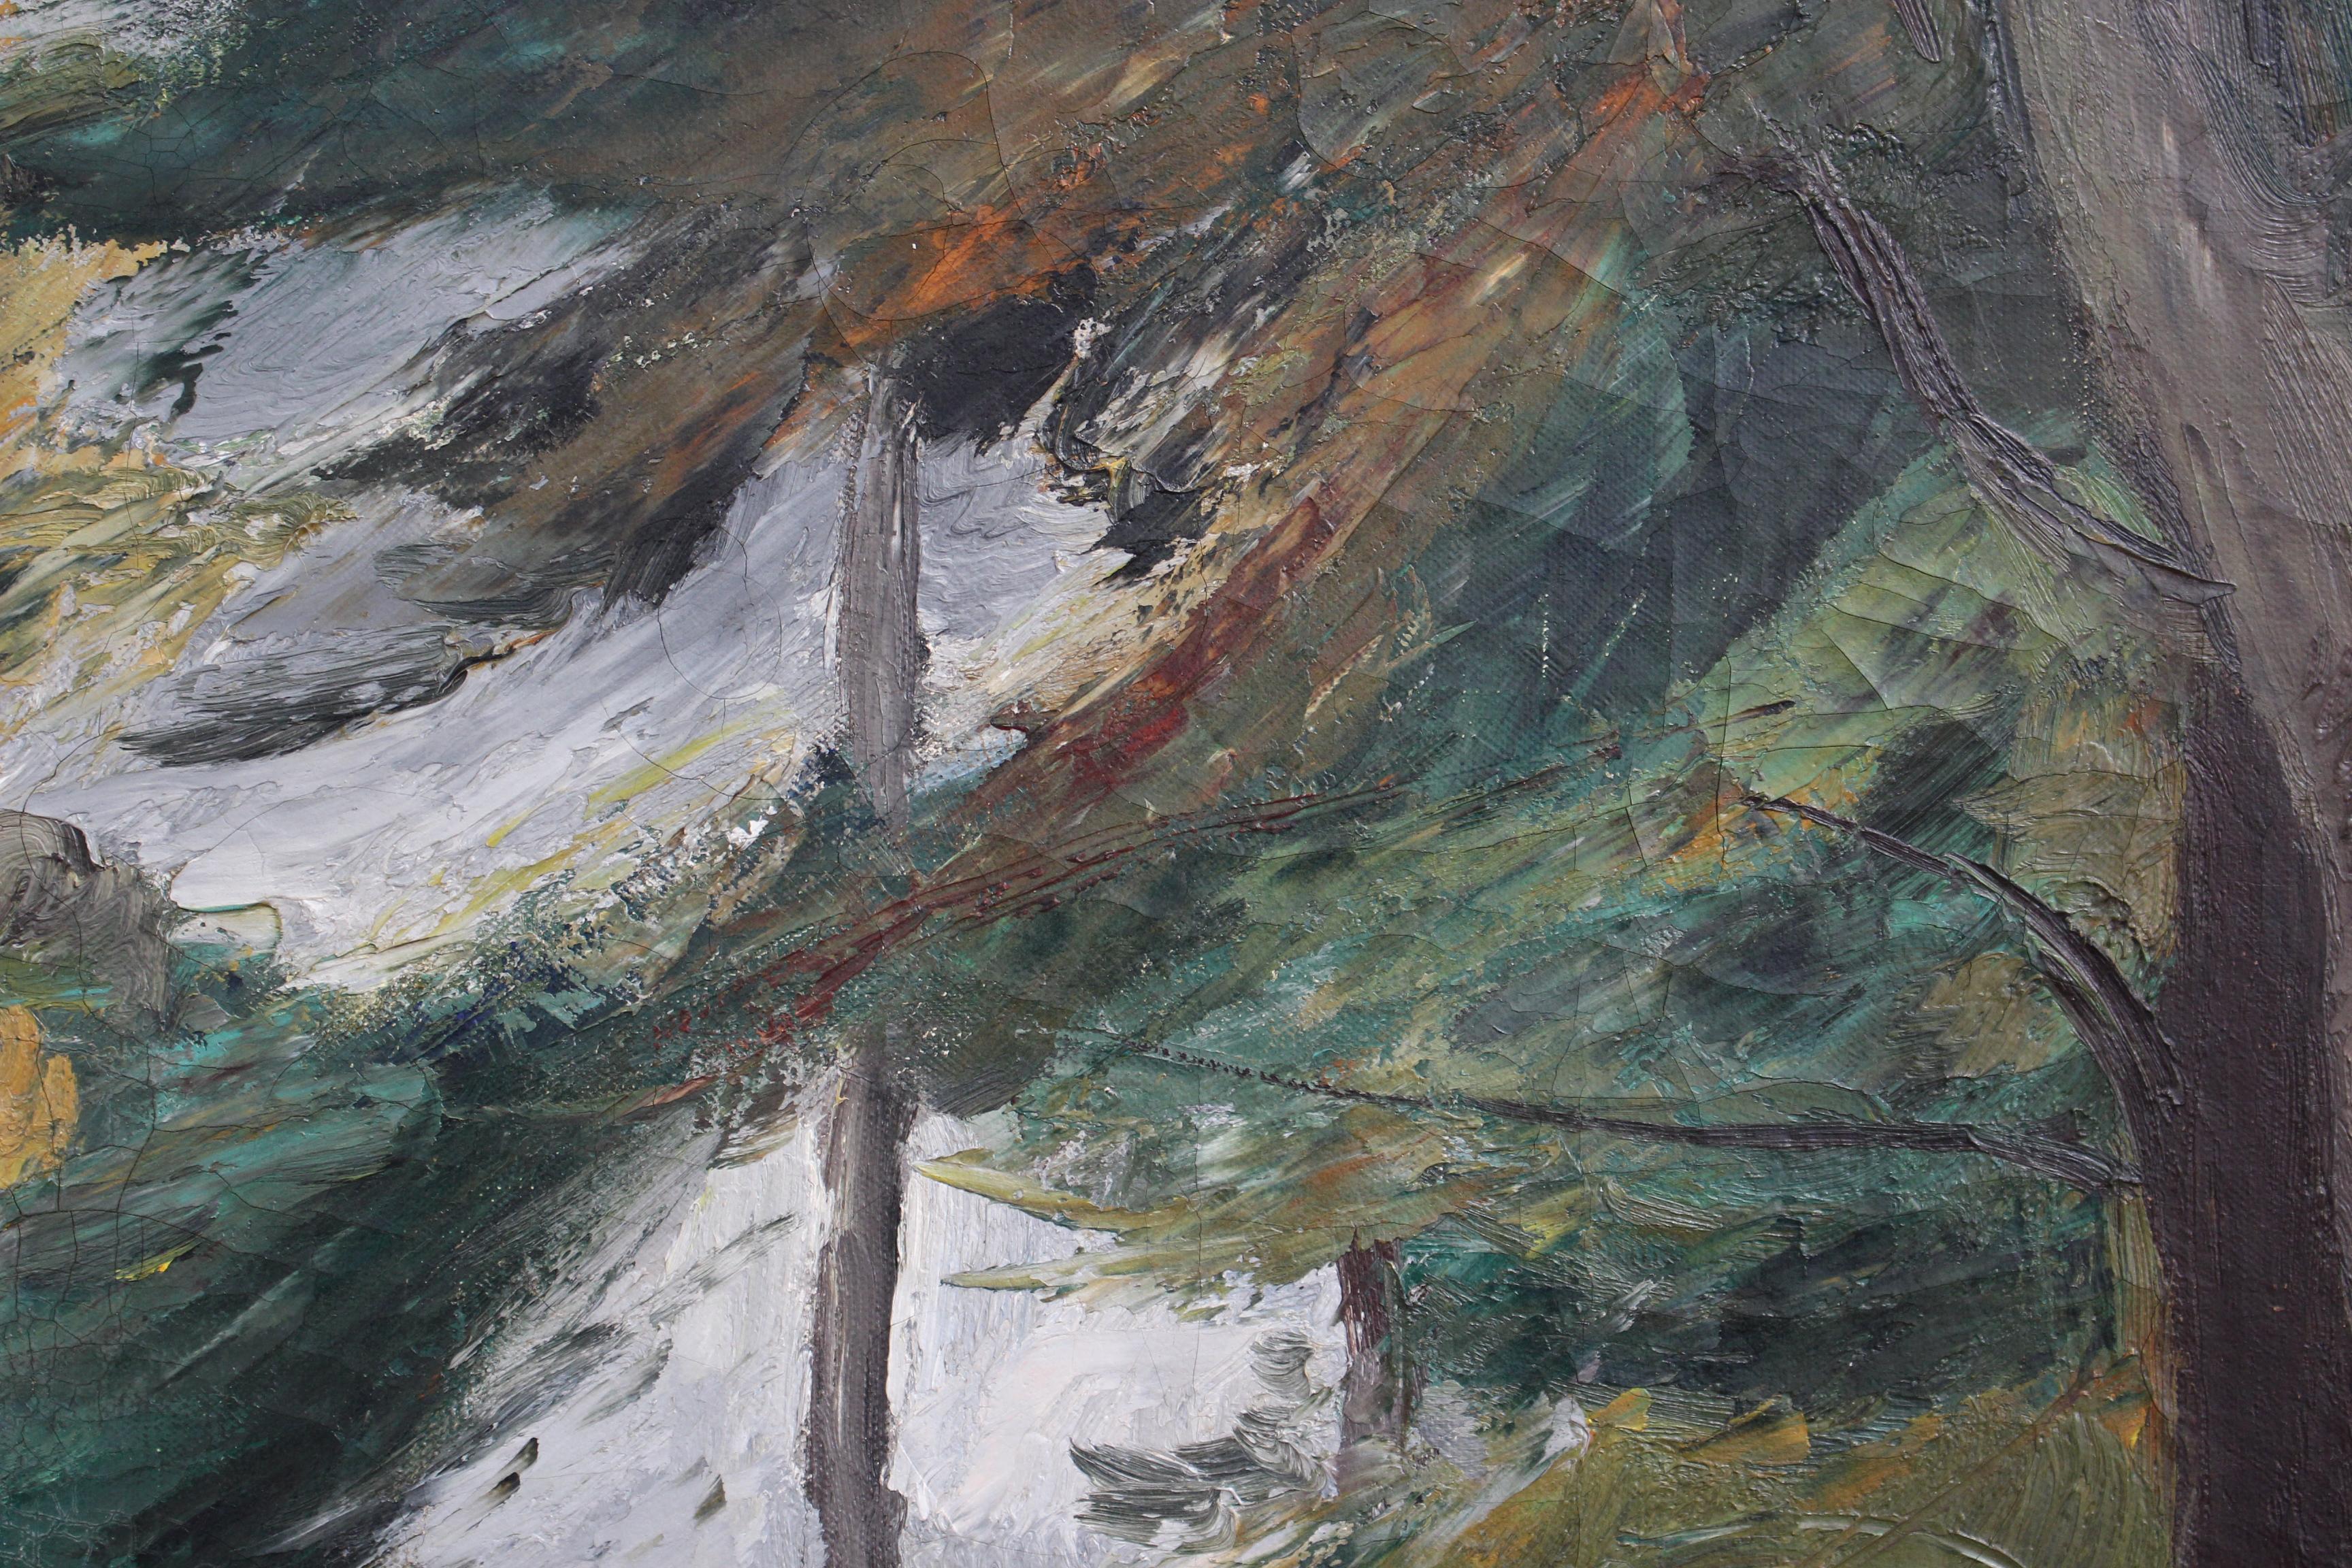 Paysage, huile sur toile, de Charles Kvapil (1928). L'artiste, Kvapil, a réalisé des dizaines d'œuvres d'art considérables qui représentent des scènes de la nature comme celle-ci. Ici, un peu de soleil méditerranéen pénètre furtivement à travers le